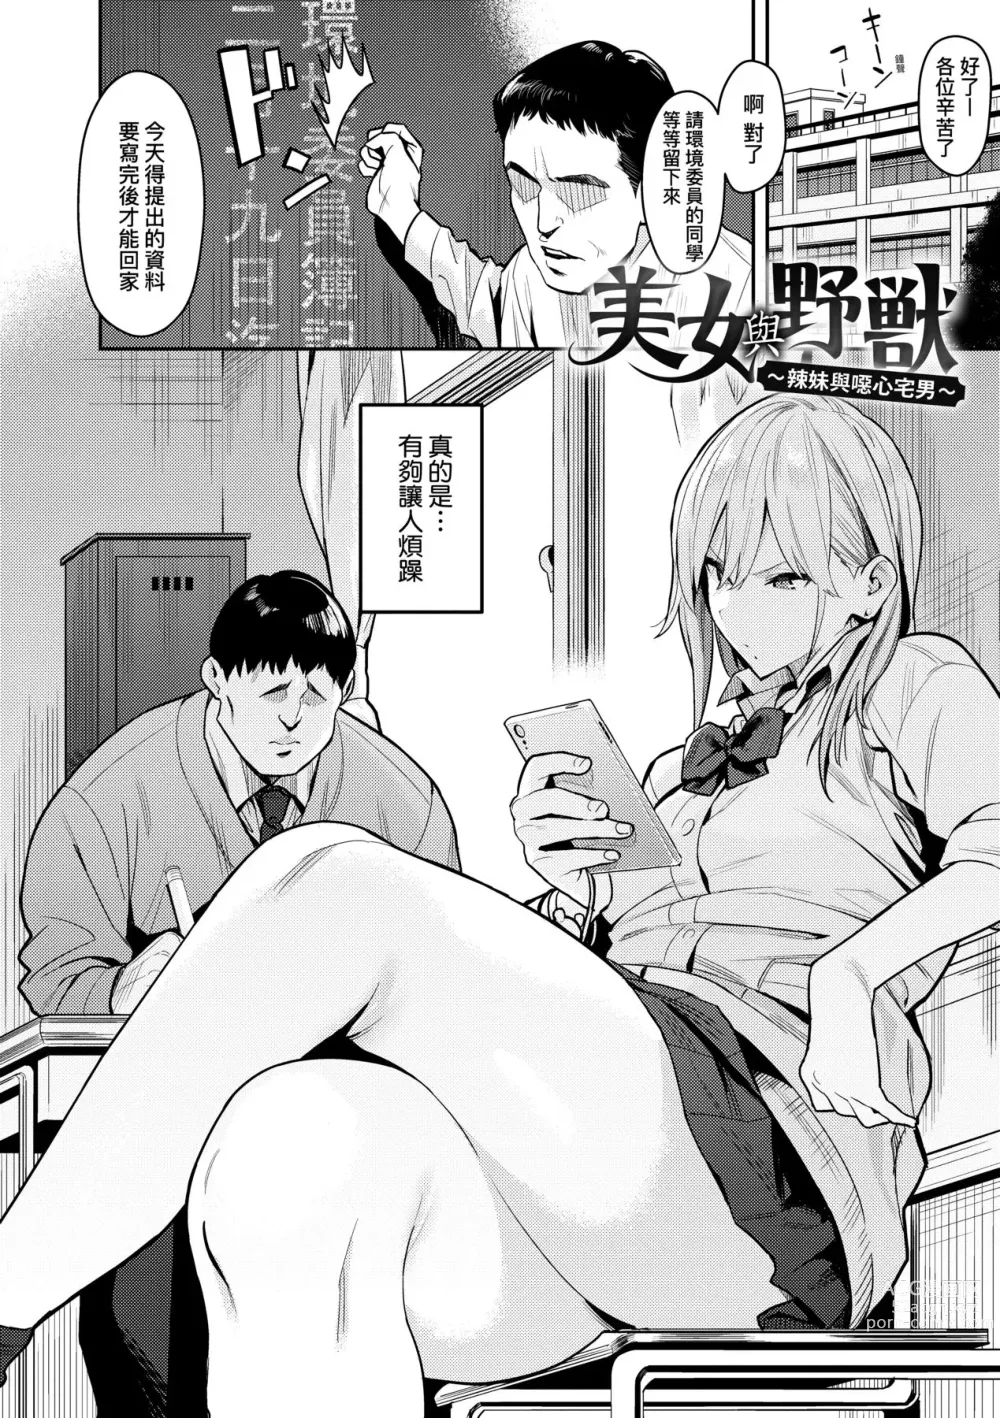 Page 9 of manga 性欲胸湧澎湃 特裝版